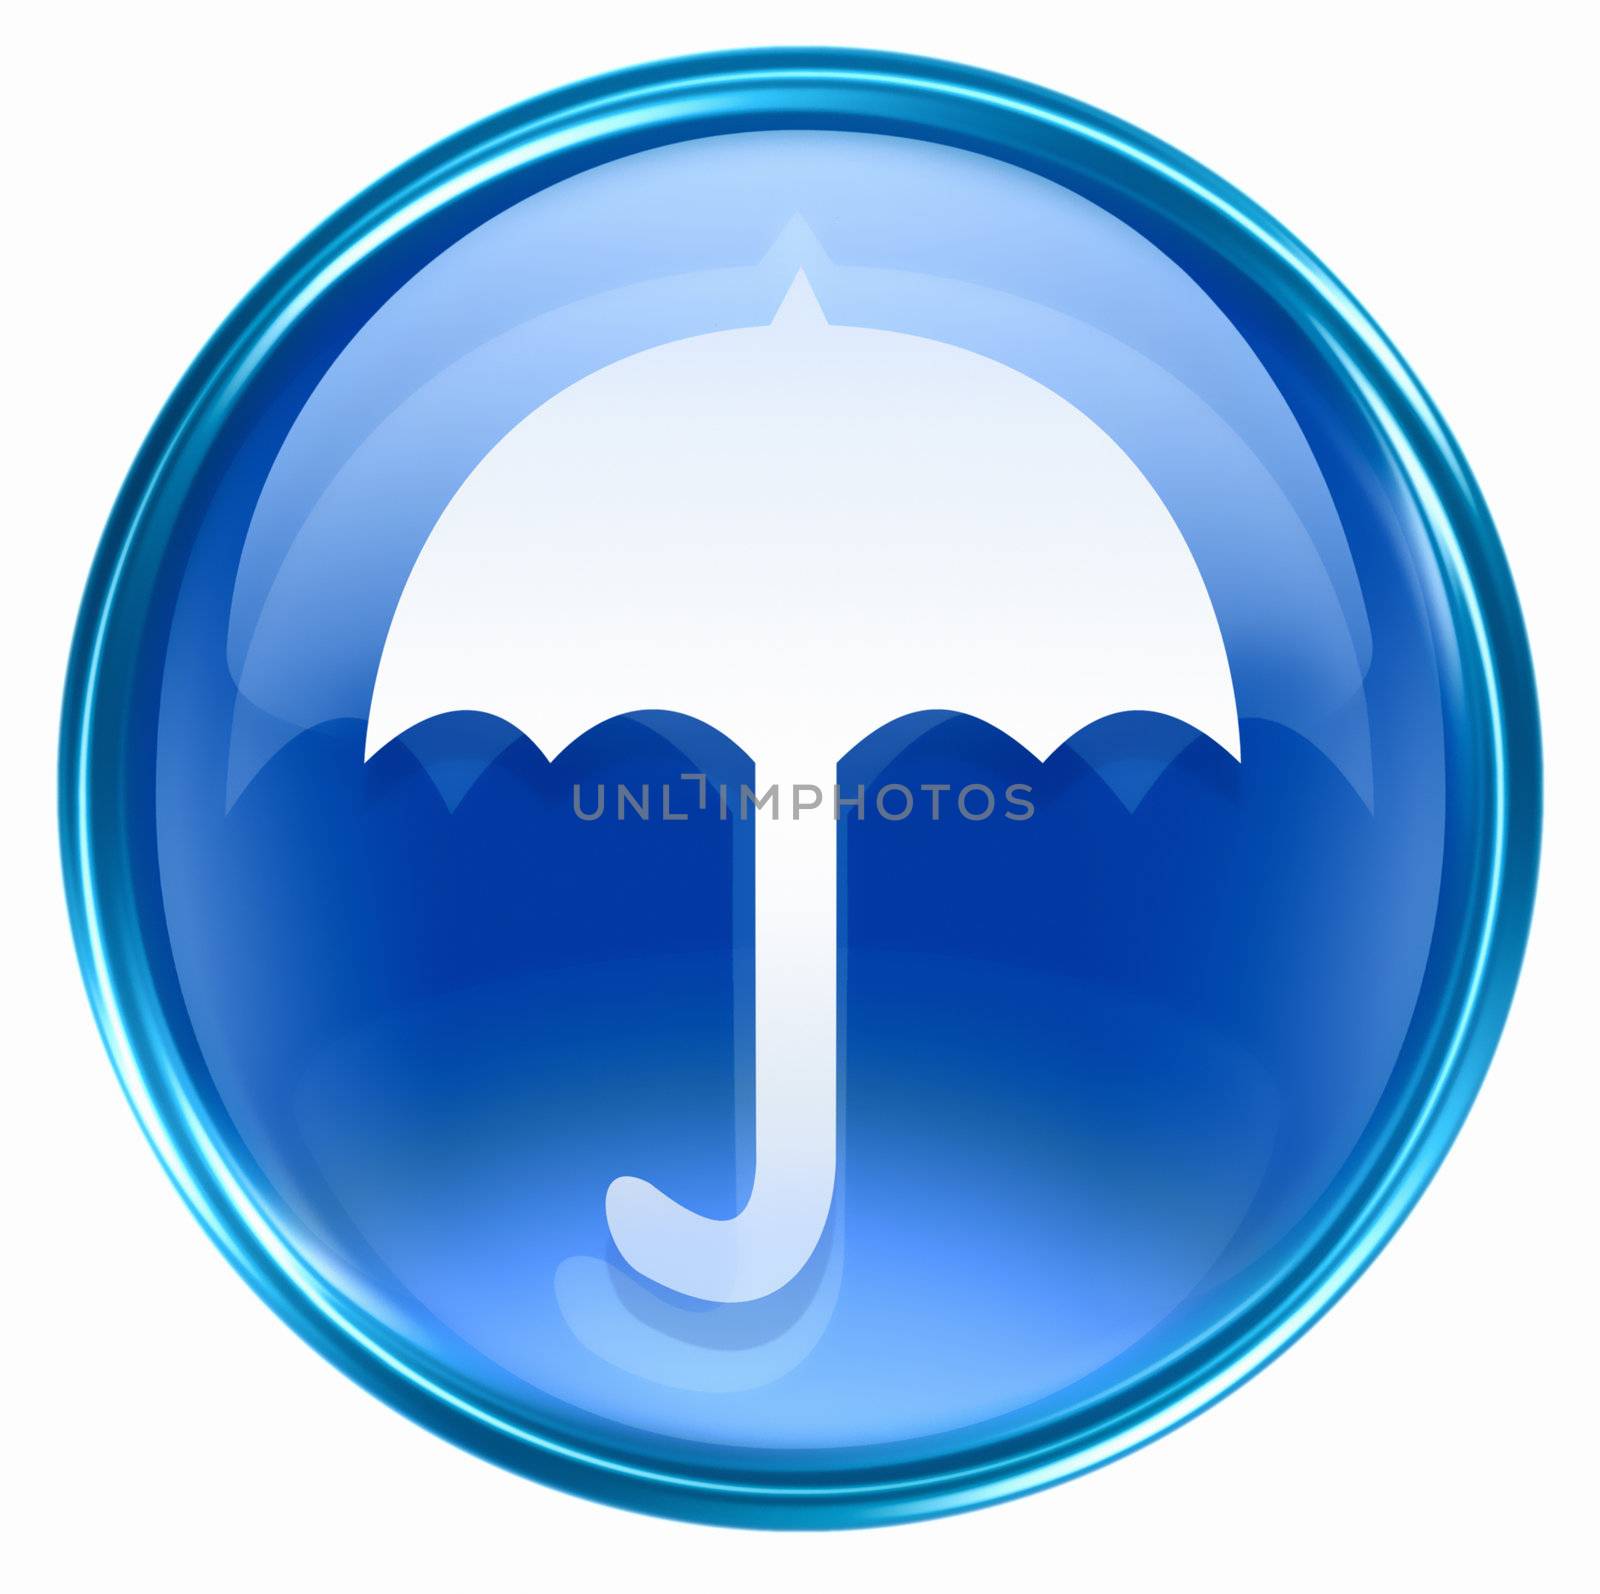 Umbrella icon blue, isolated on white background